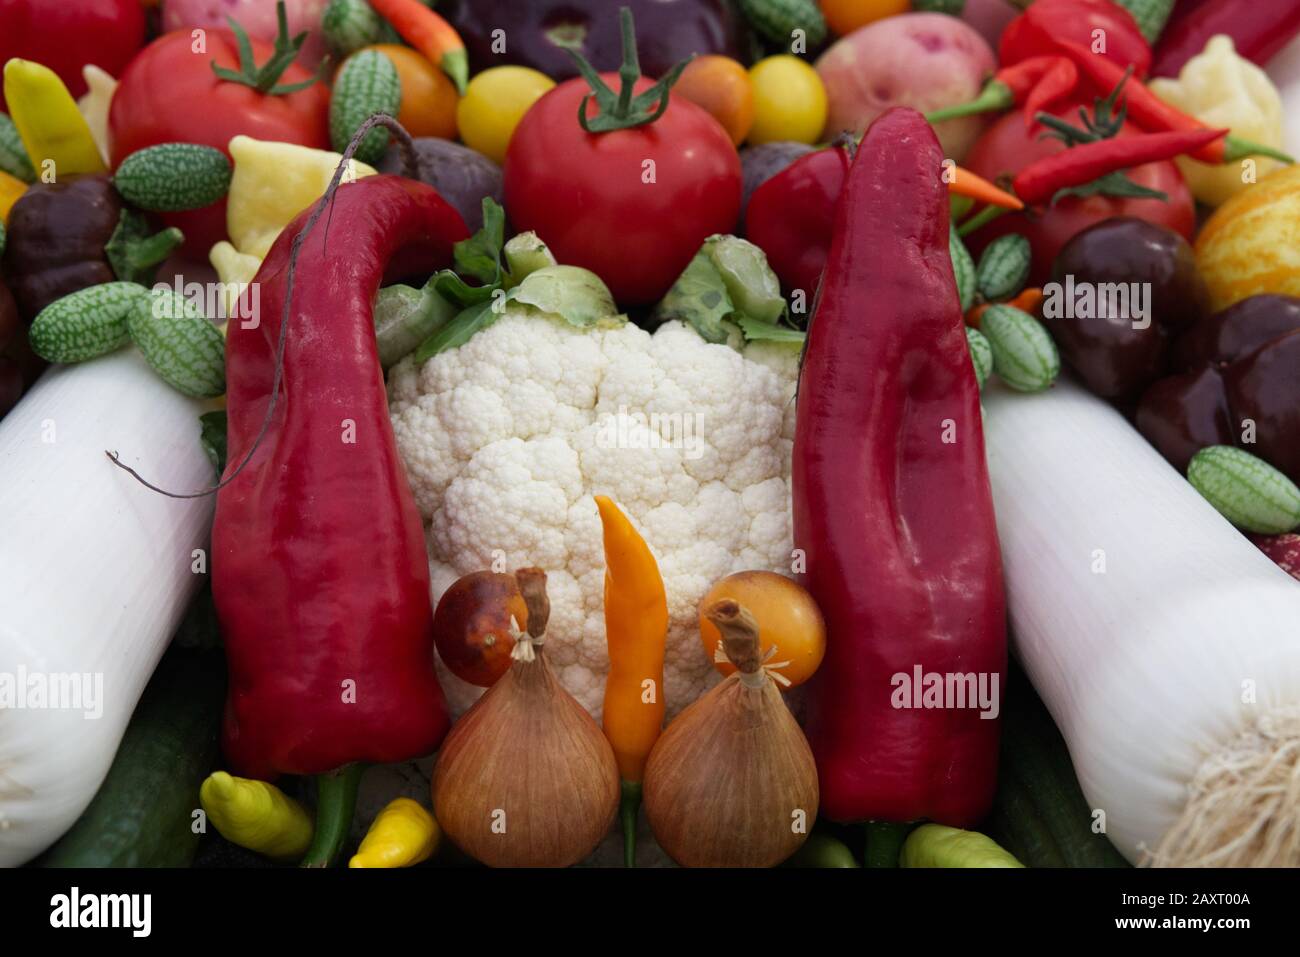 Fruit and veg basket Stock Photo